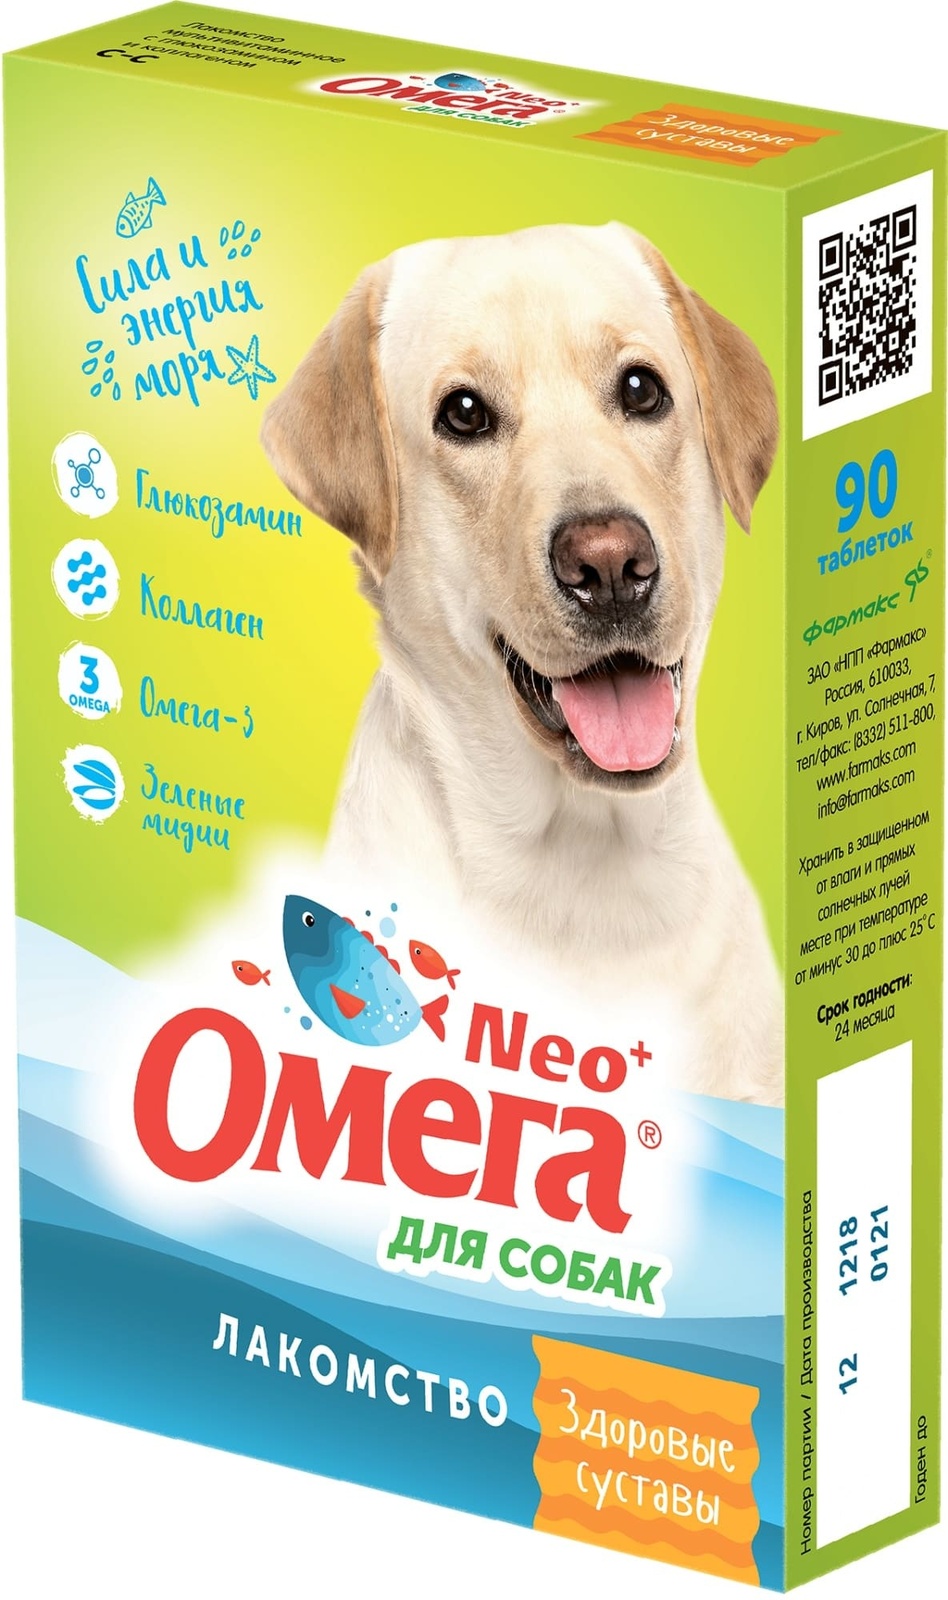 цена Фармакс Фармакс мультивитаминное лакомство Омега Neo+ Здоровые суставы с глюкозамином и коллагеном для собак (60 г)